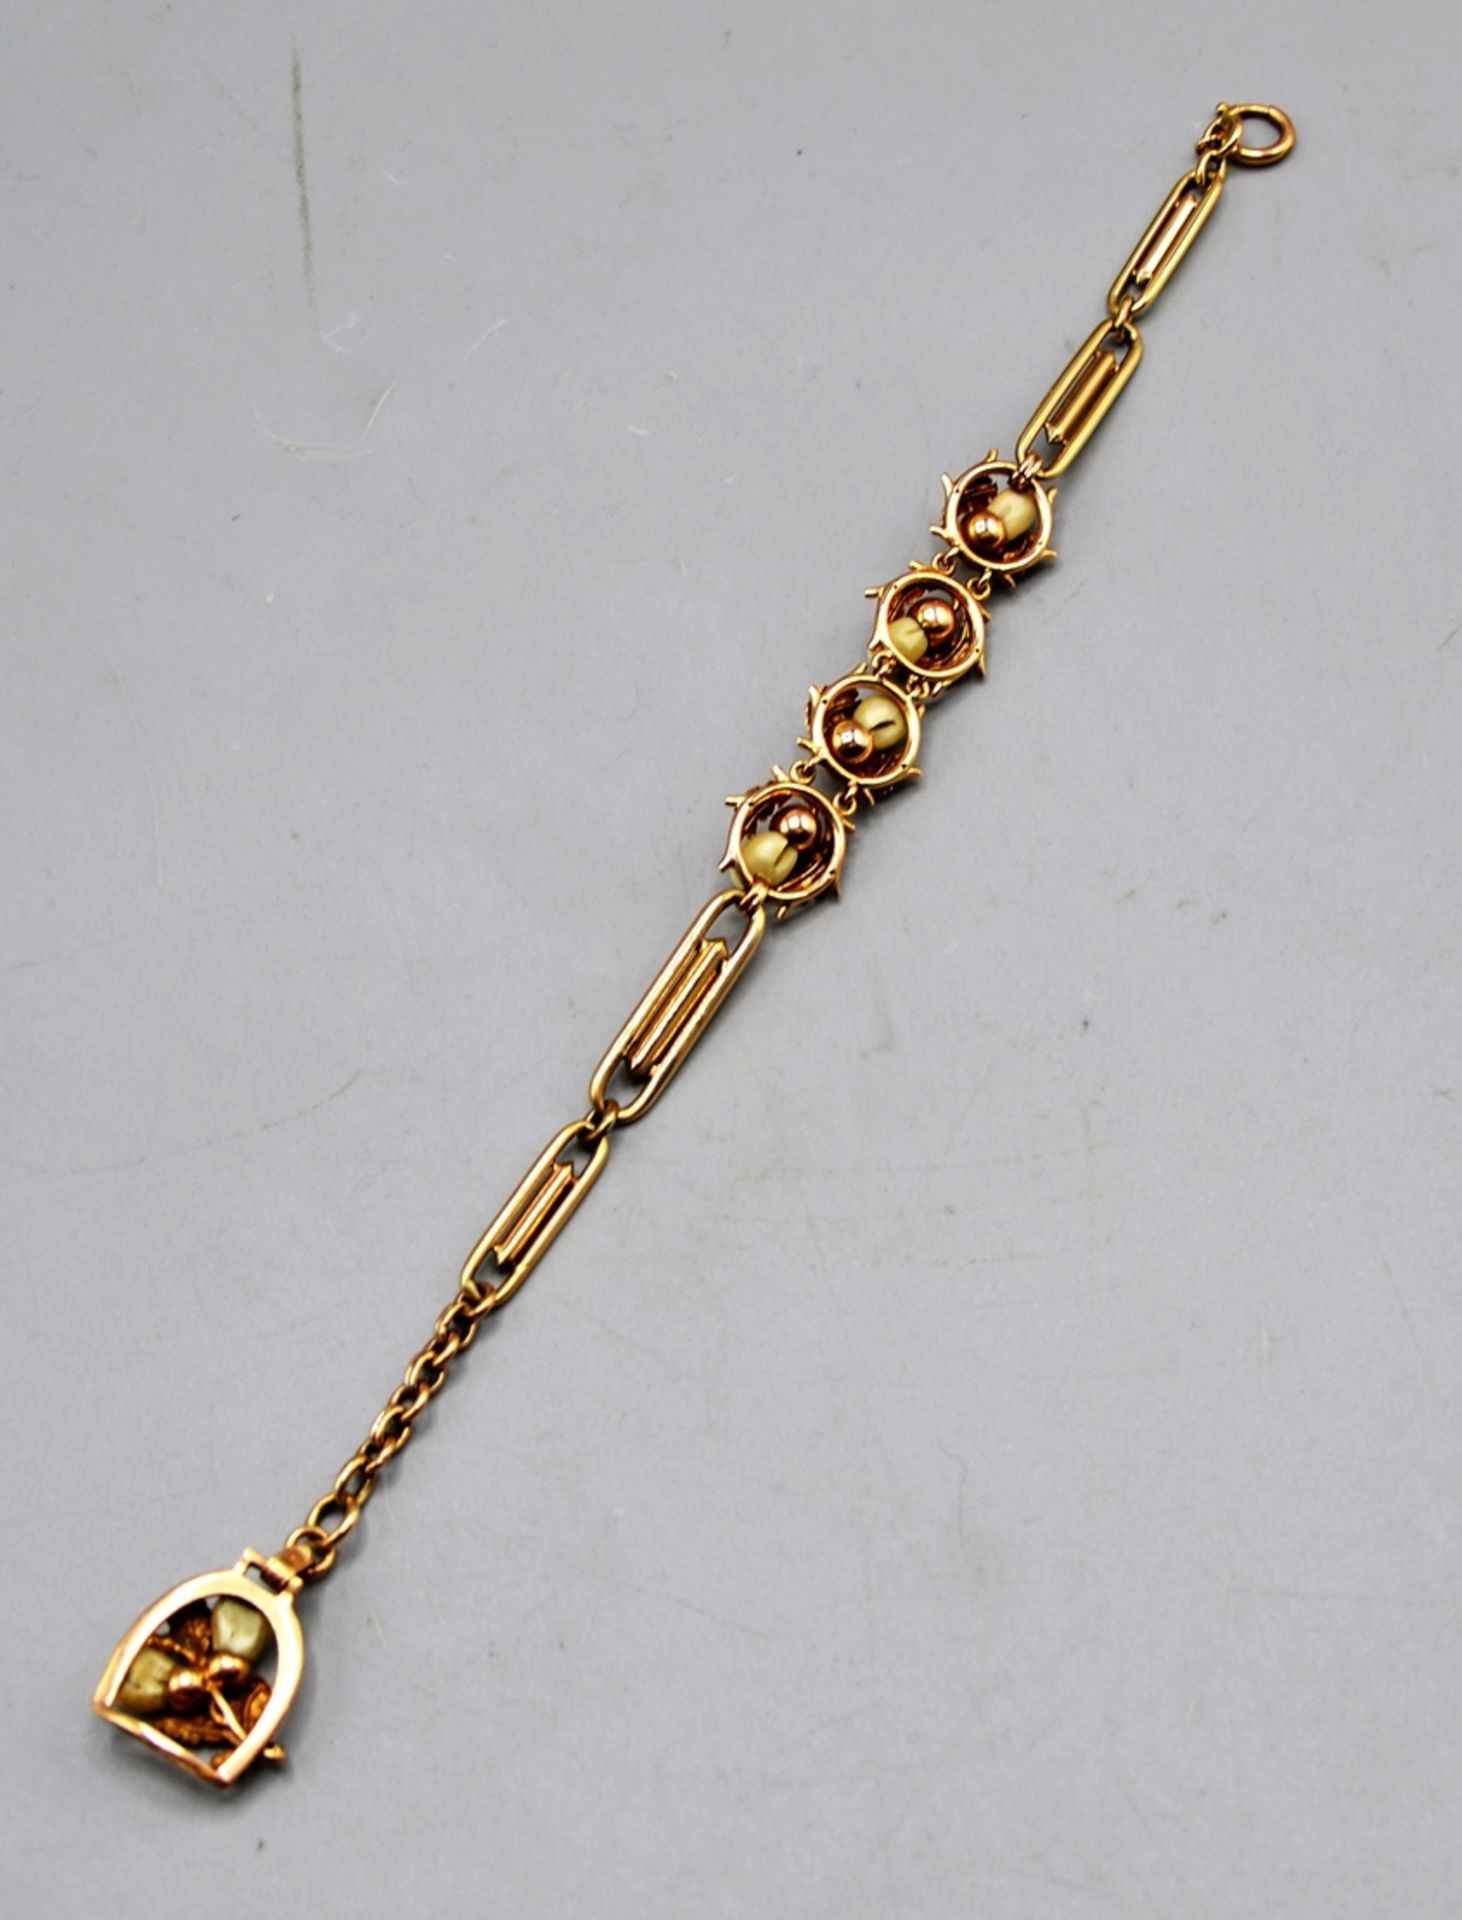 Grandel Chatelaine Uhrenzipfel Gold 585 Jagdschmuck ca. 25 cm, 28,3 g - Image 3 of 4